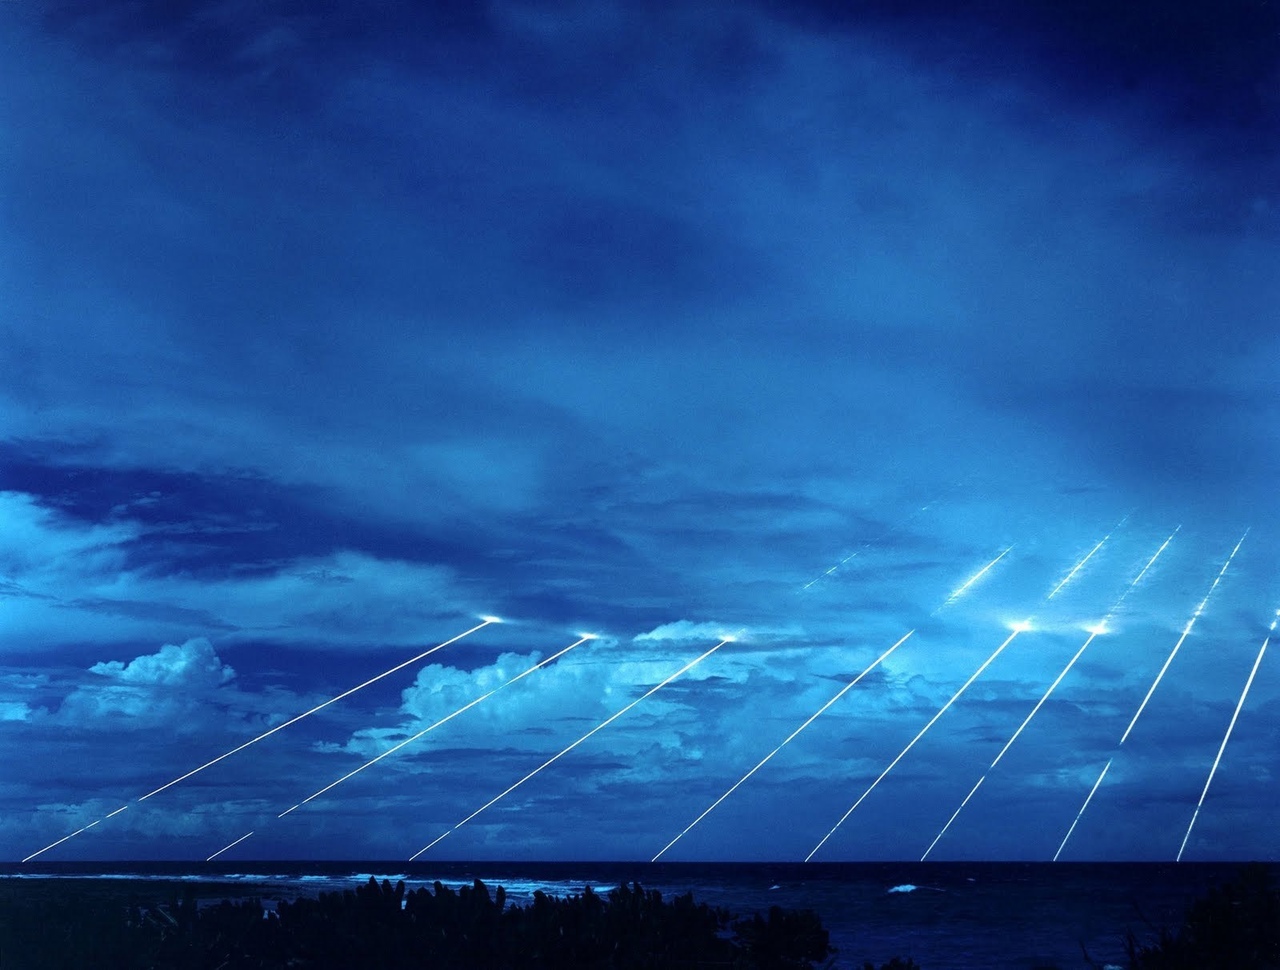 1280x970, 318 Kb / ракета, линии, небо, облака, США, боеголовка, испытания, след, траектория